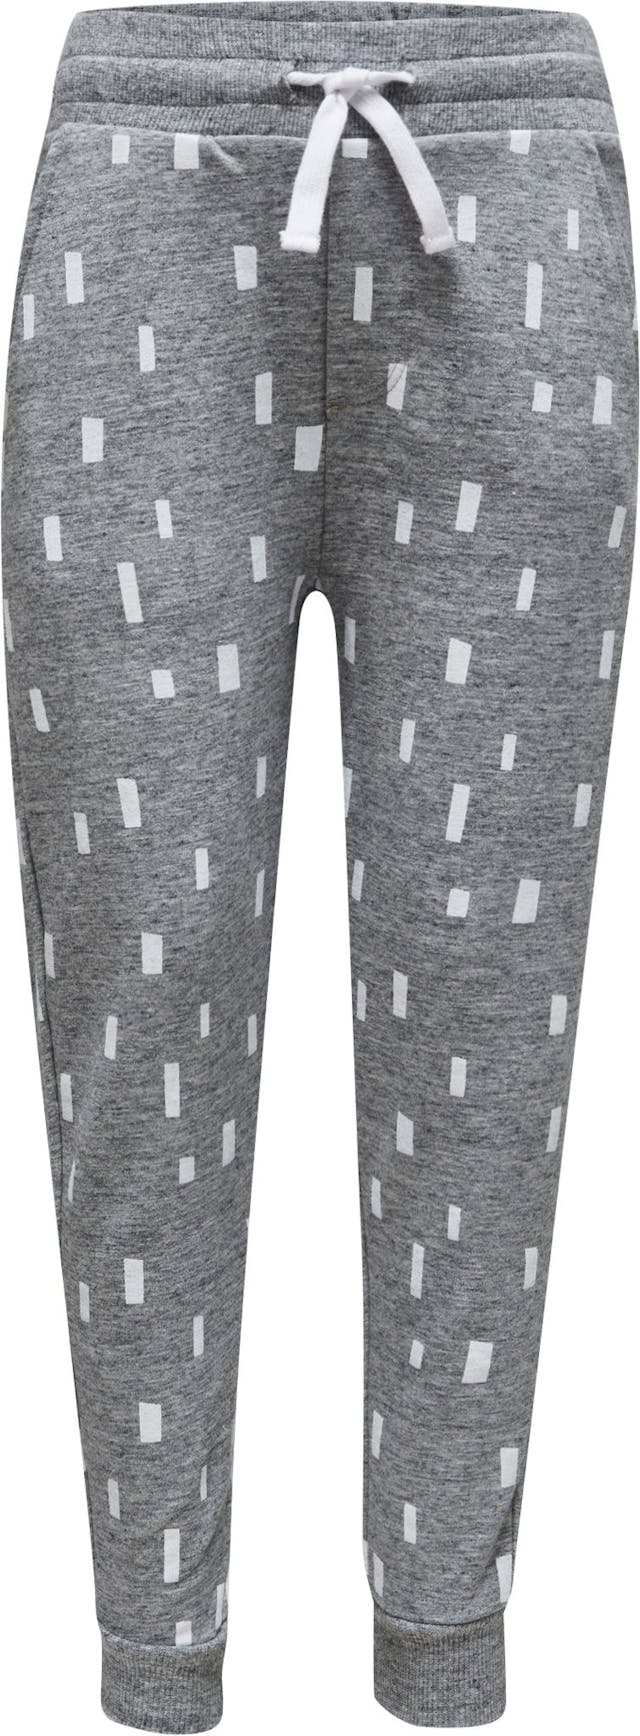 Image de produit pour Pantalon en tricot côtelé à taille élastique - Enfant